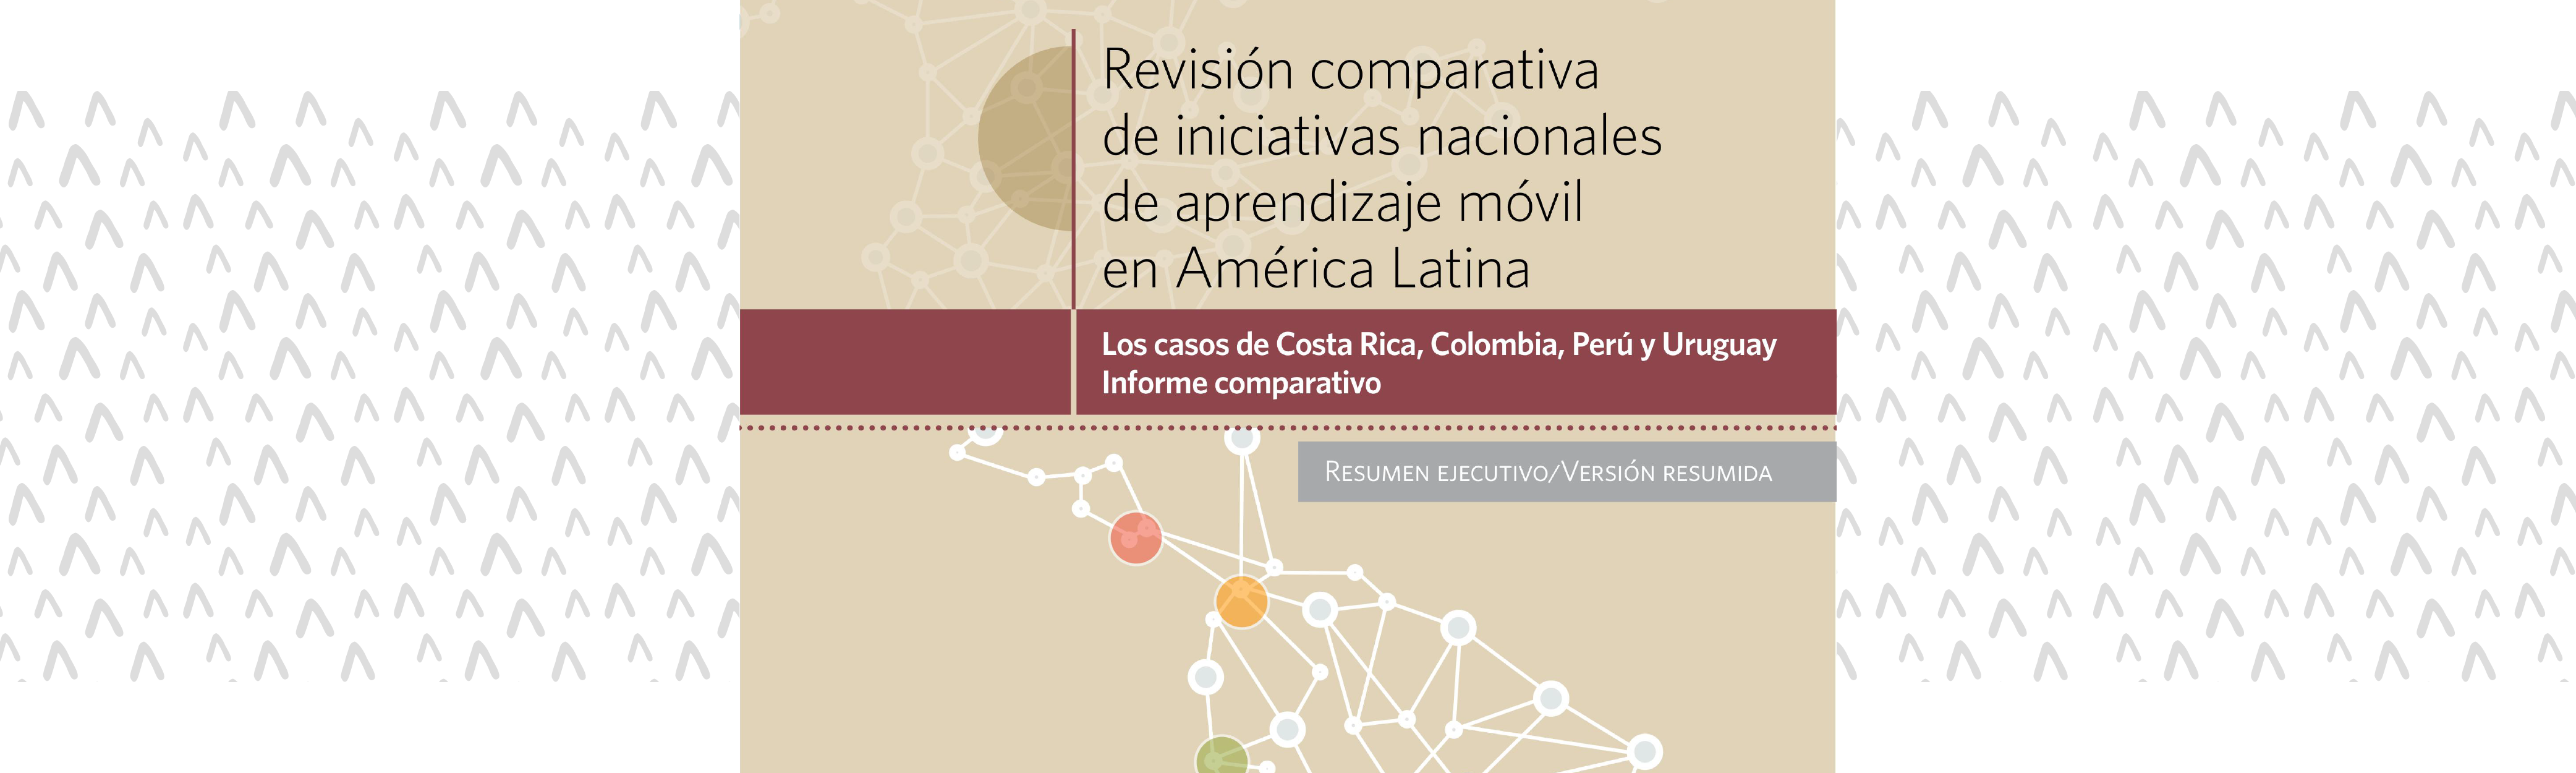 	Revisión comparativa de iniciativas nacionales de aprendizaje móvil en América Latina